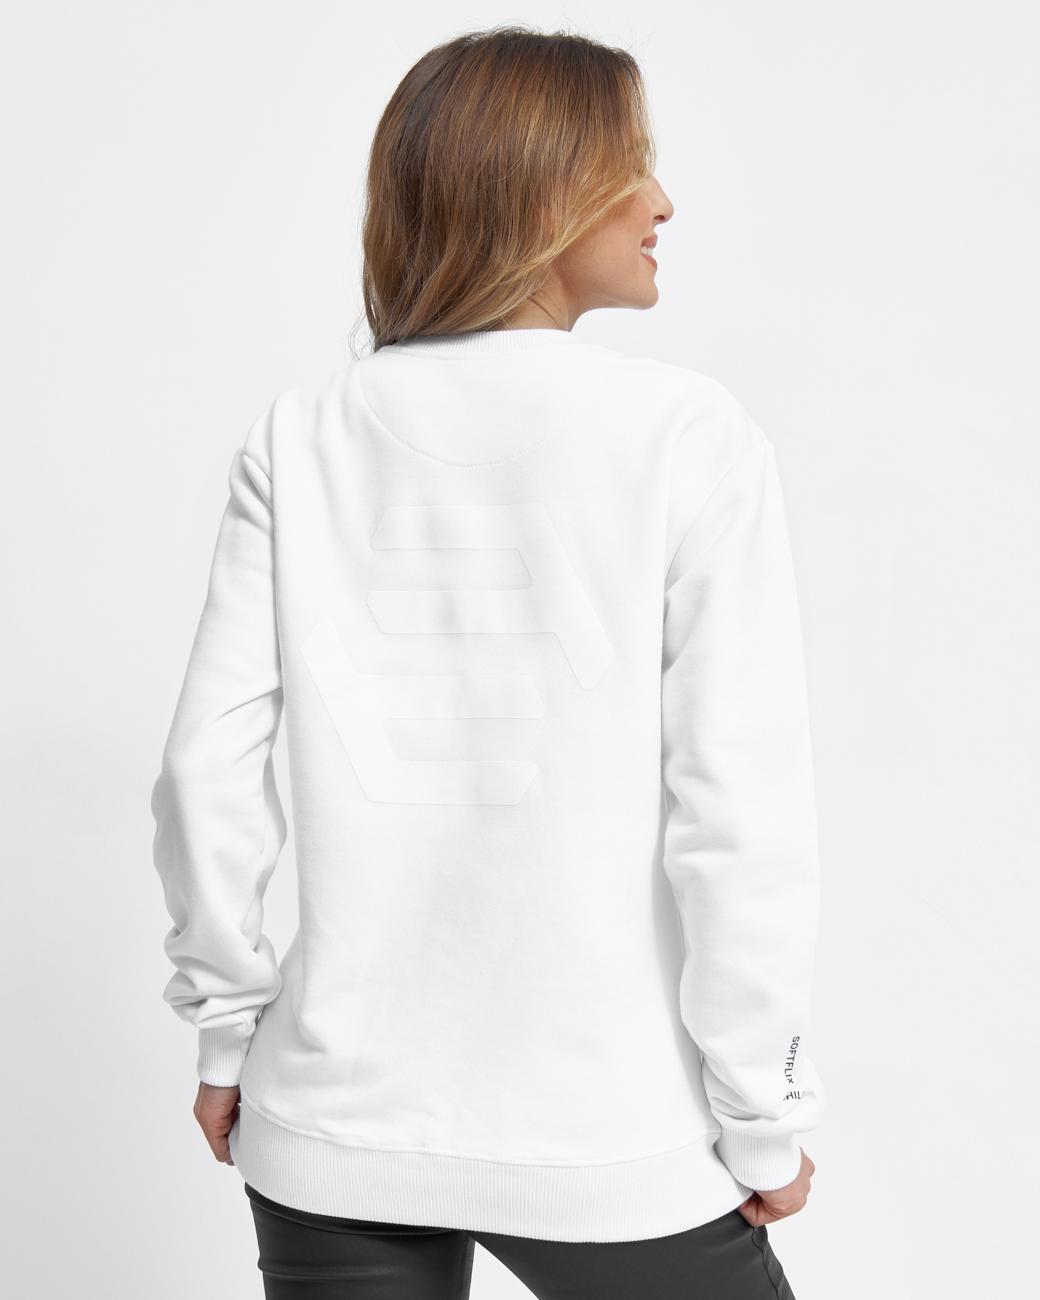 Sweatshirt SOFTFLIX white M